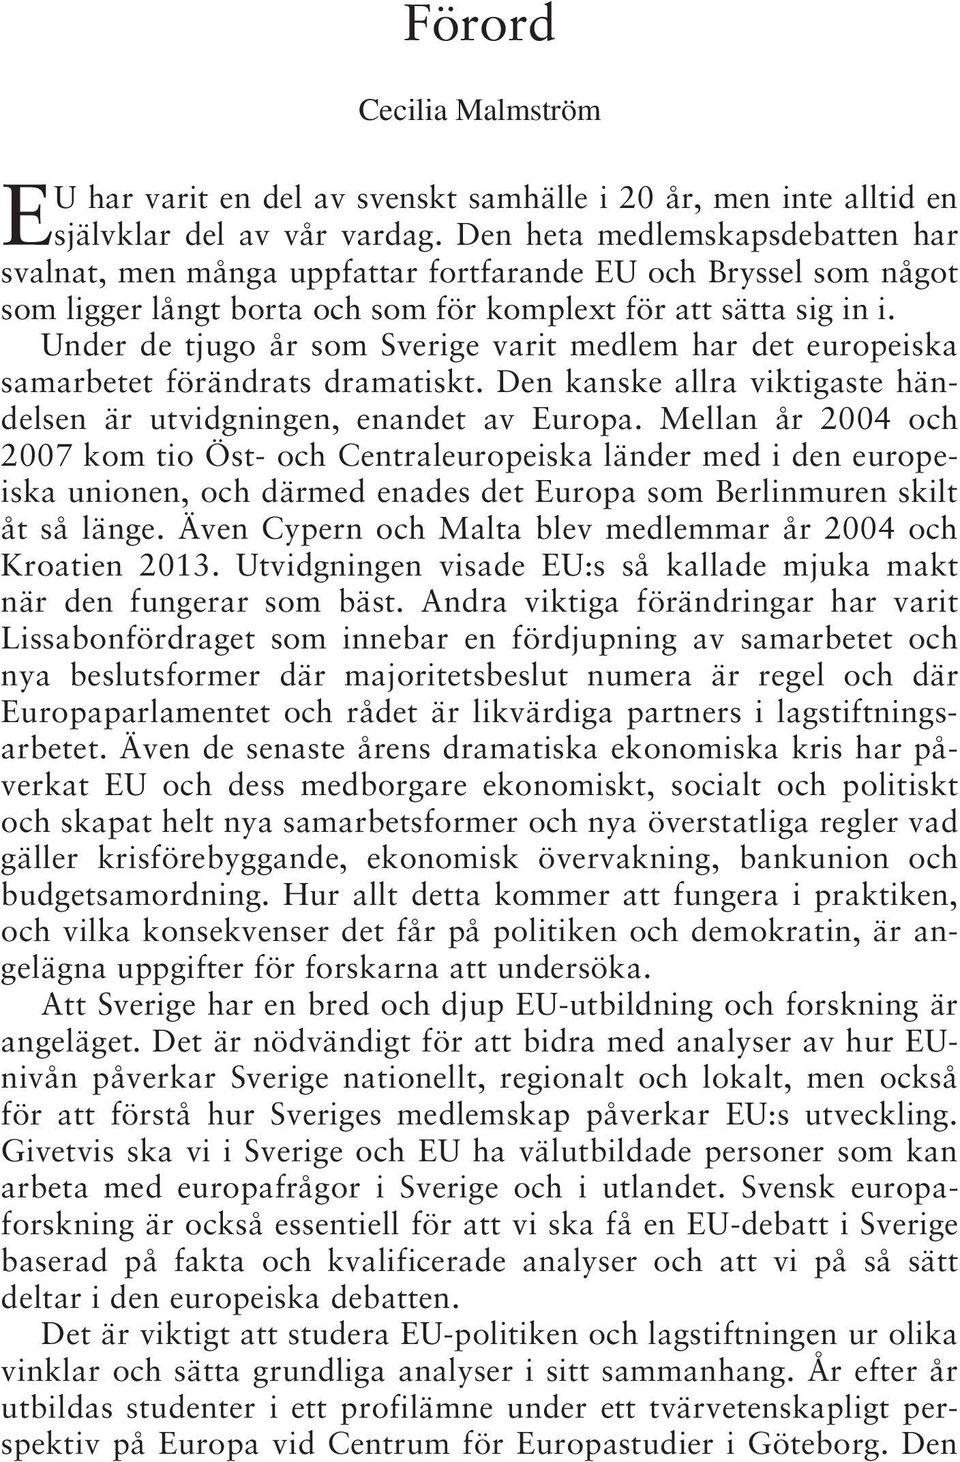 Under de tjugo år som Sverige varit medlem har det europeiska samarbetet förändrats dramatiskt. Den kanske allra viktigaste händelsen är utvidgningen, enandet av Europa.